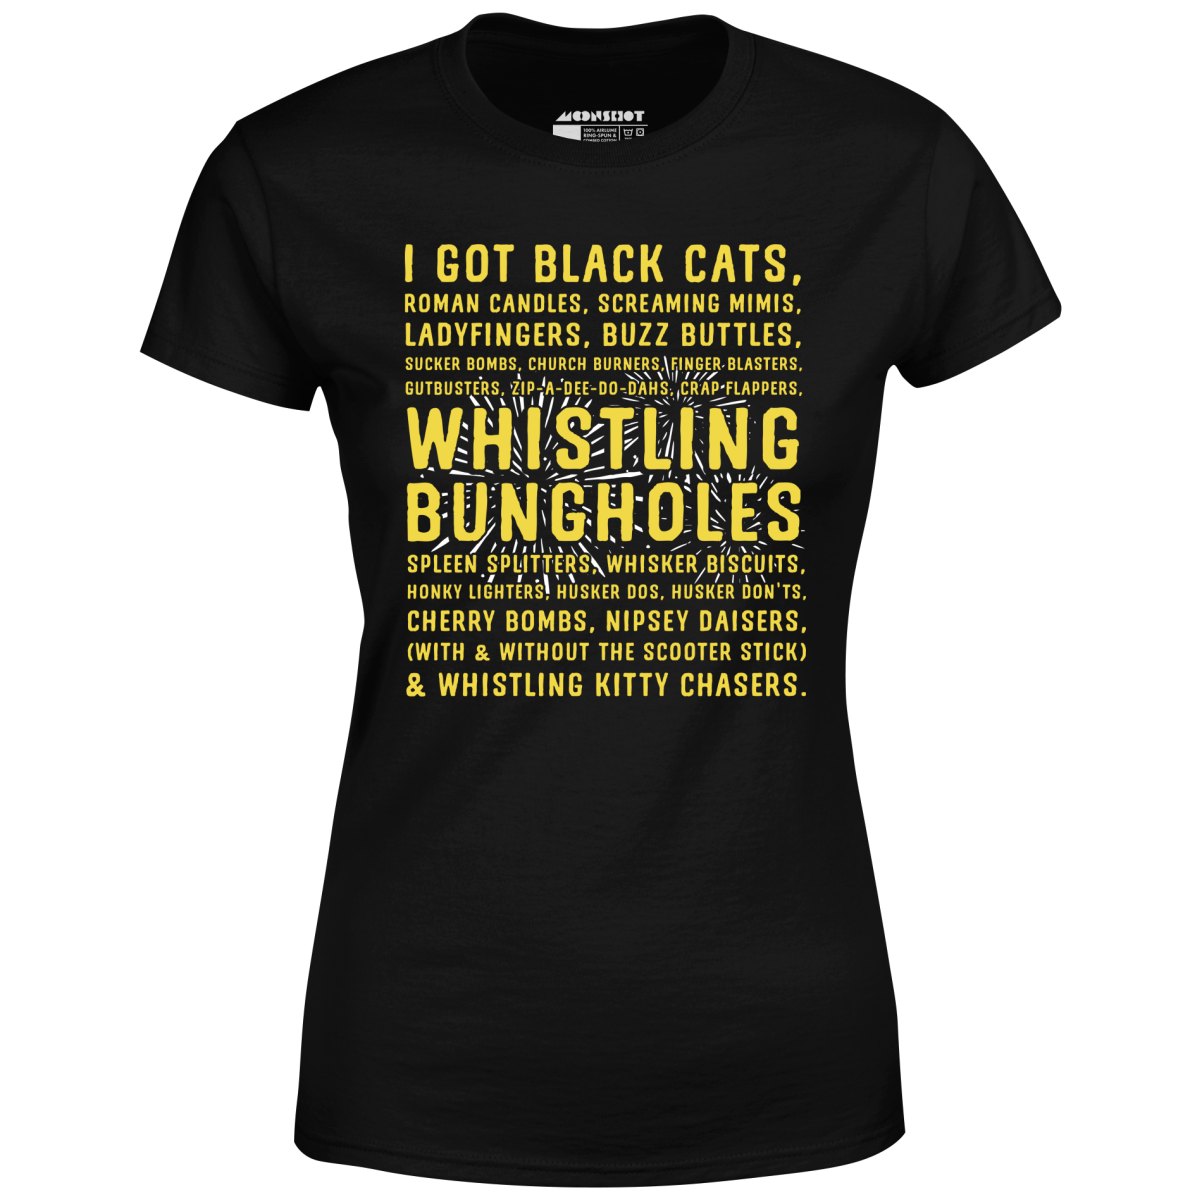 I Got Black Cats - Women's T-Shirt